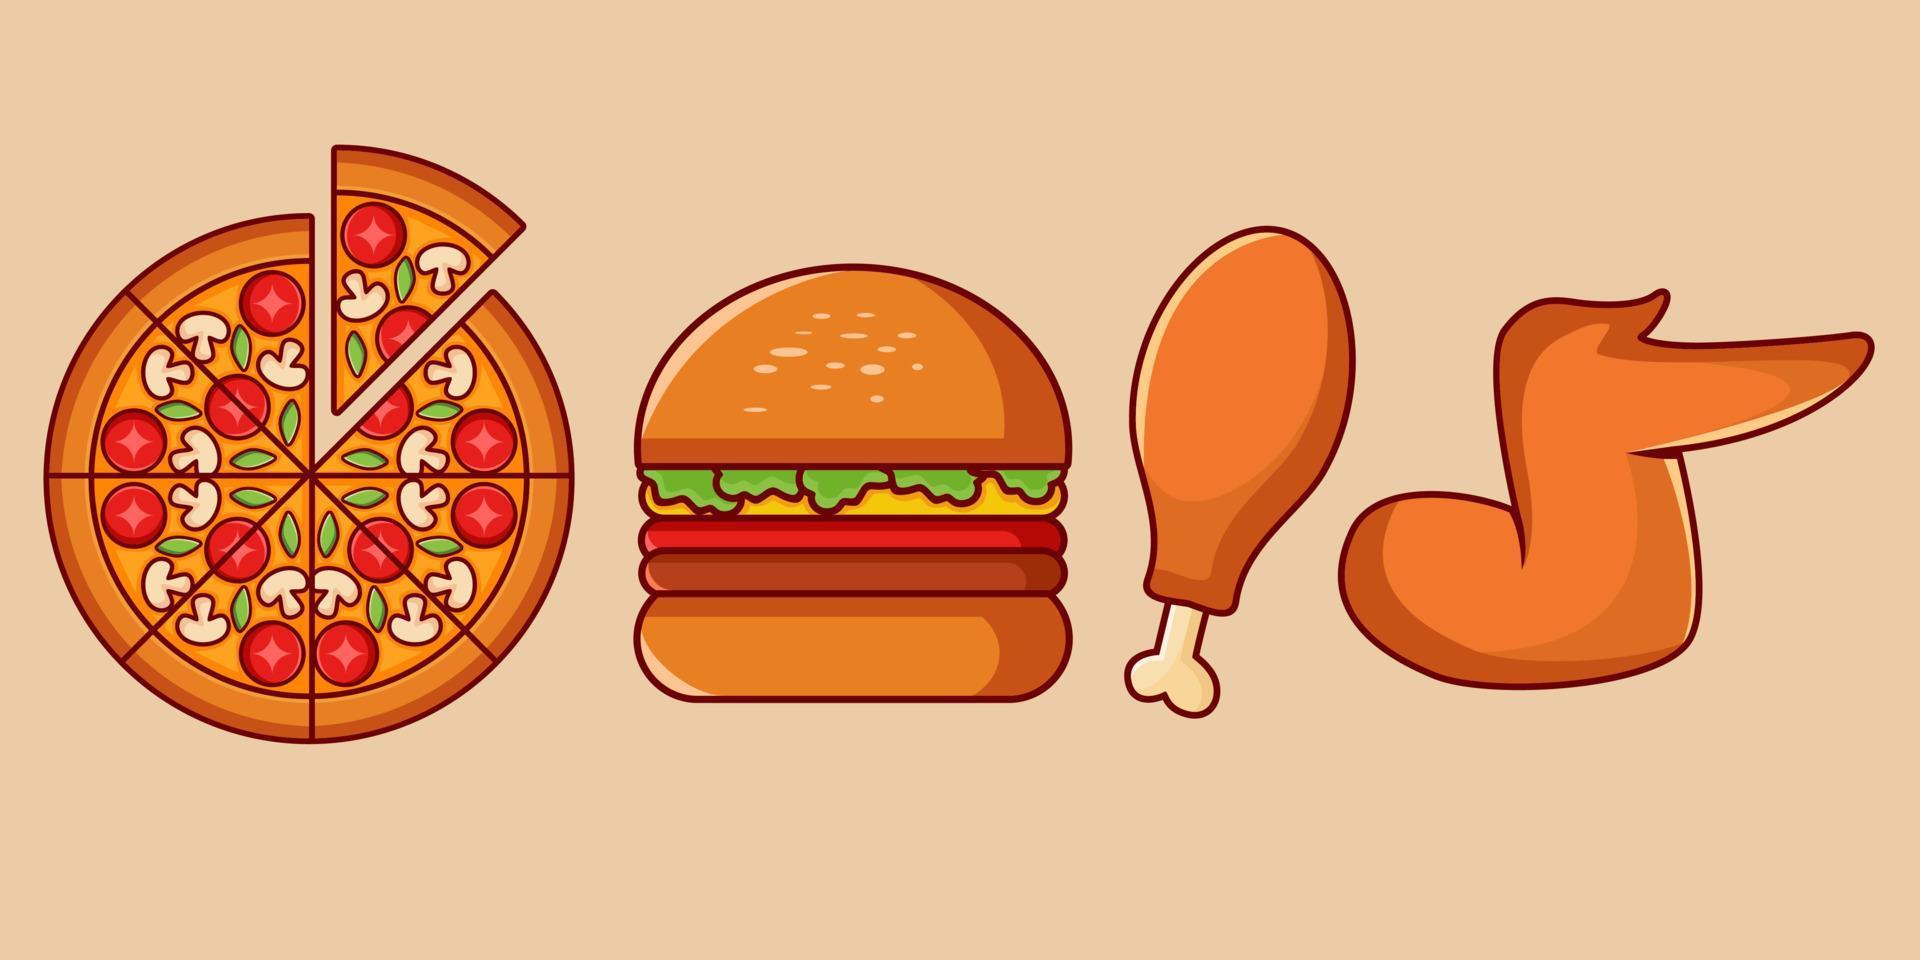 vetor ilustração do comida, pizza, hambúrguer, frito frango